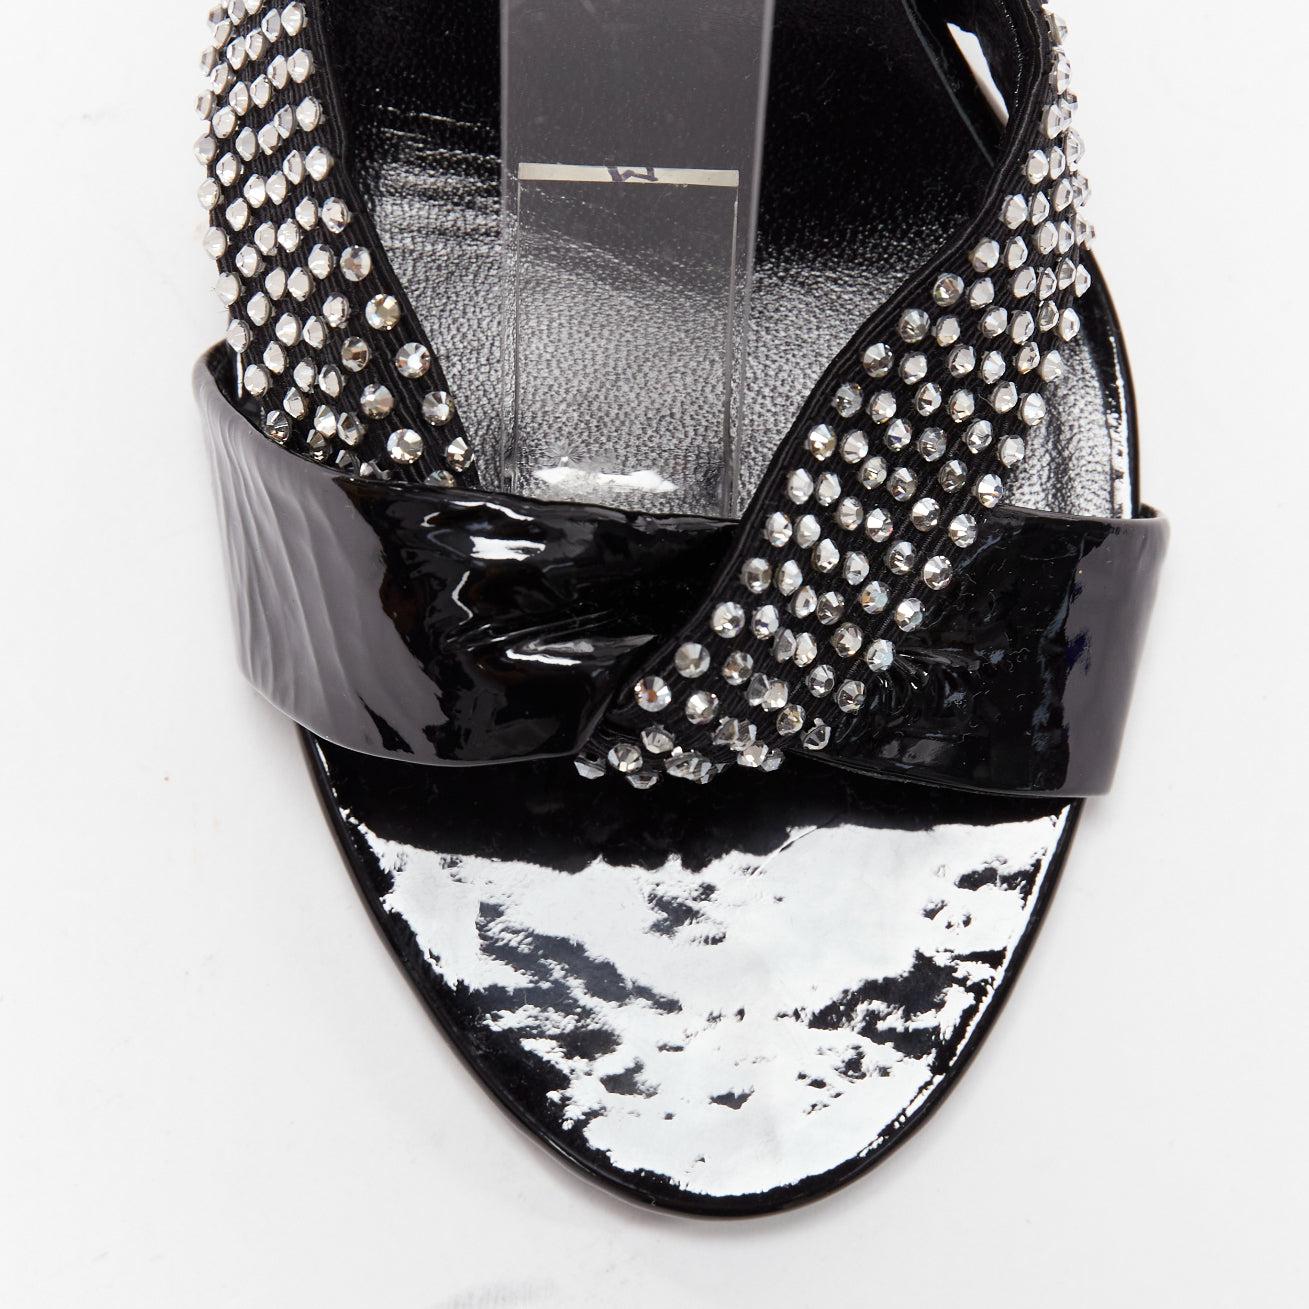 CELINE Hedi Slimane black patent leather silver crystals sandal heels EU38 For Sale 1